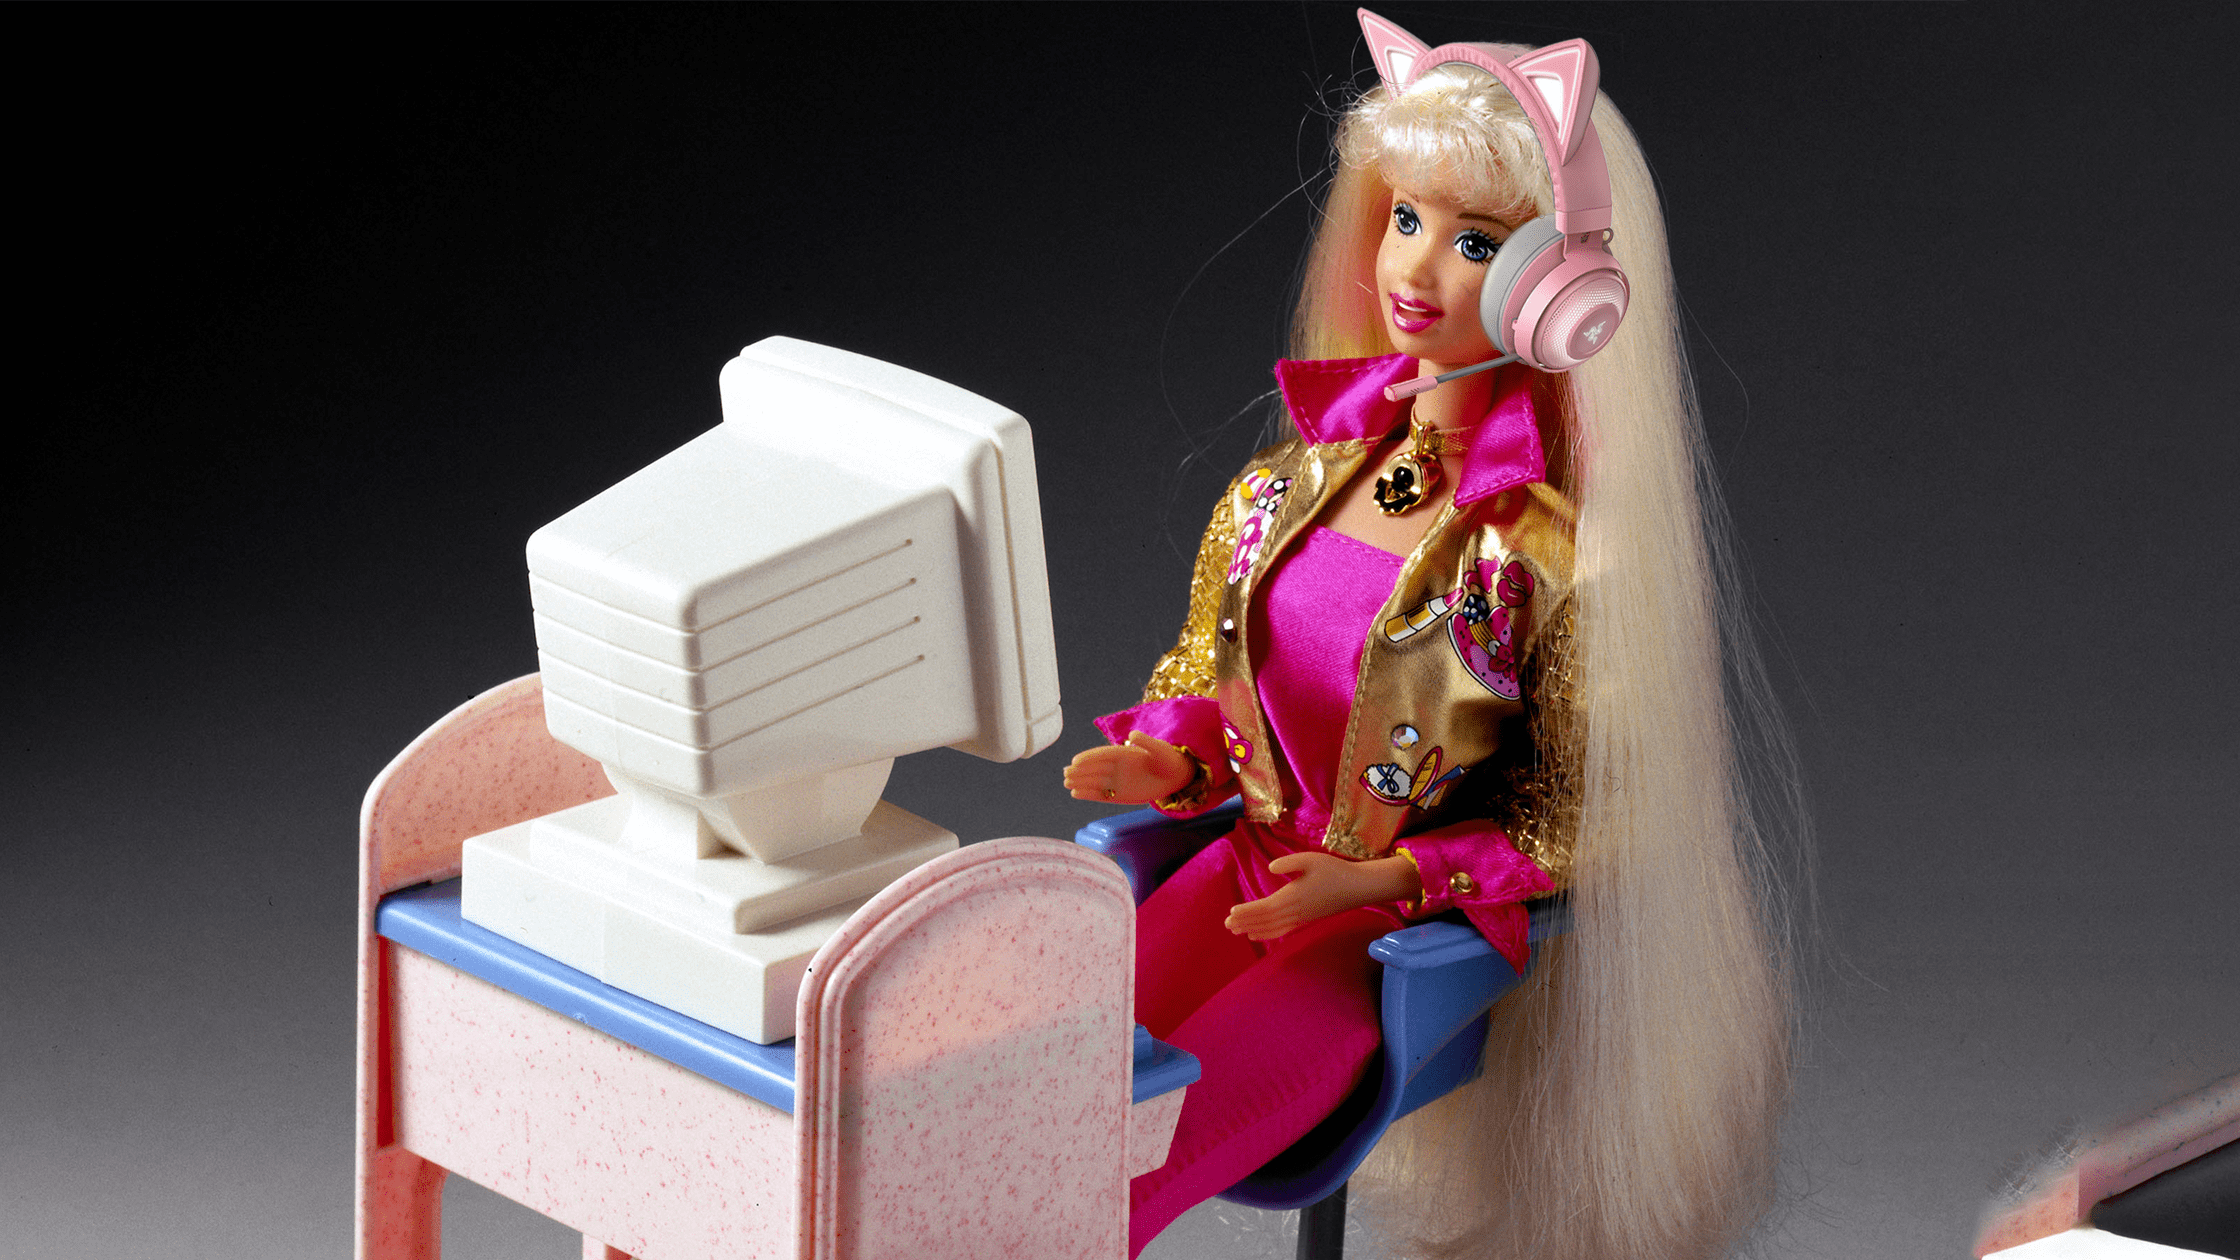 Bambola Barbie gaming su vecchio PC e cuffie con orecchie da gatto